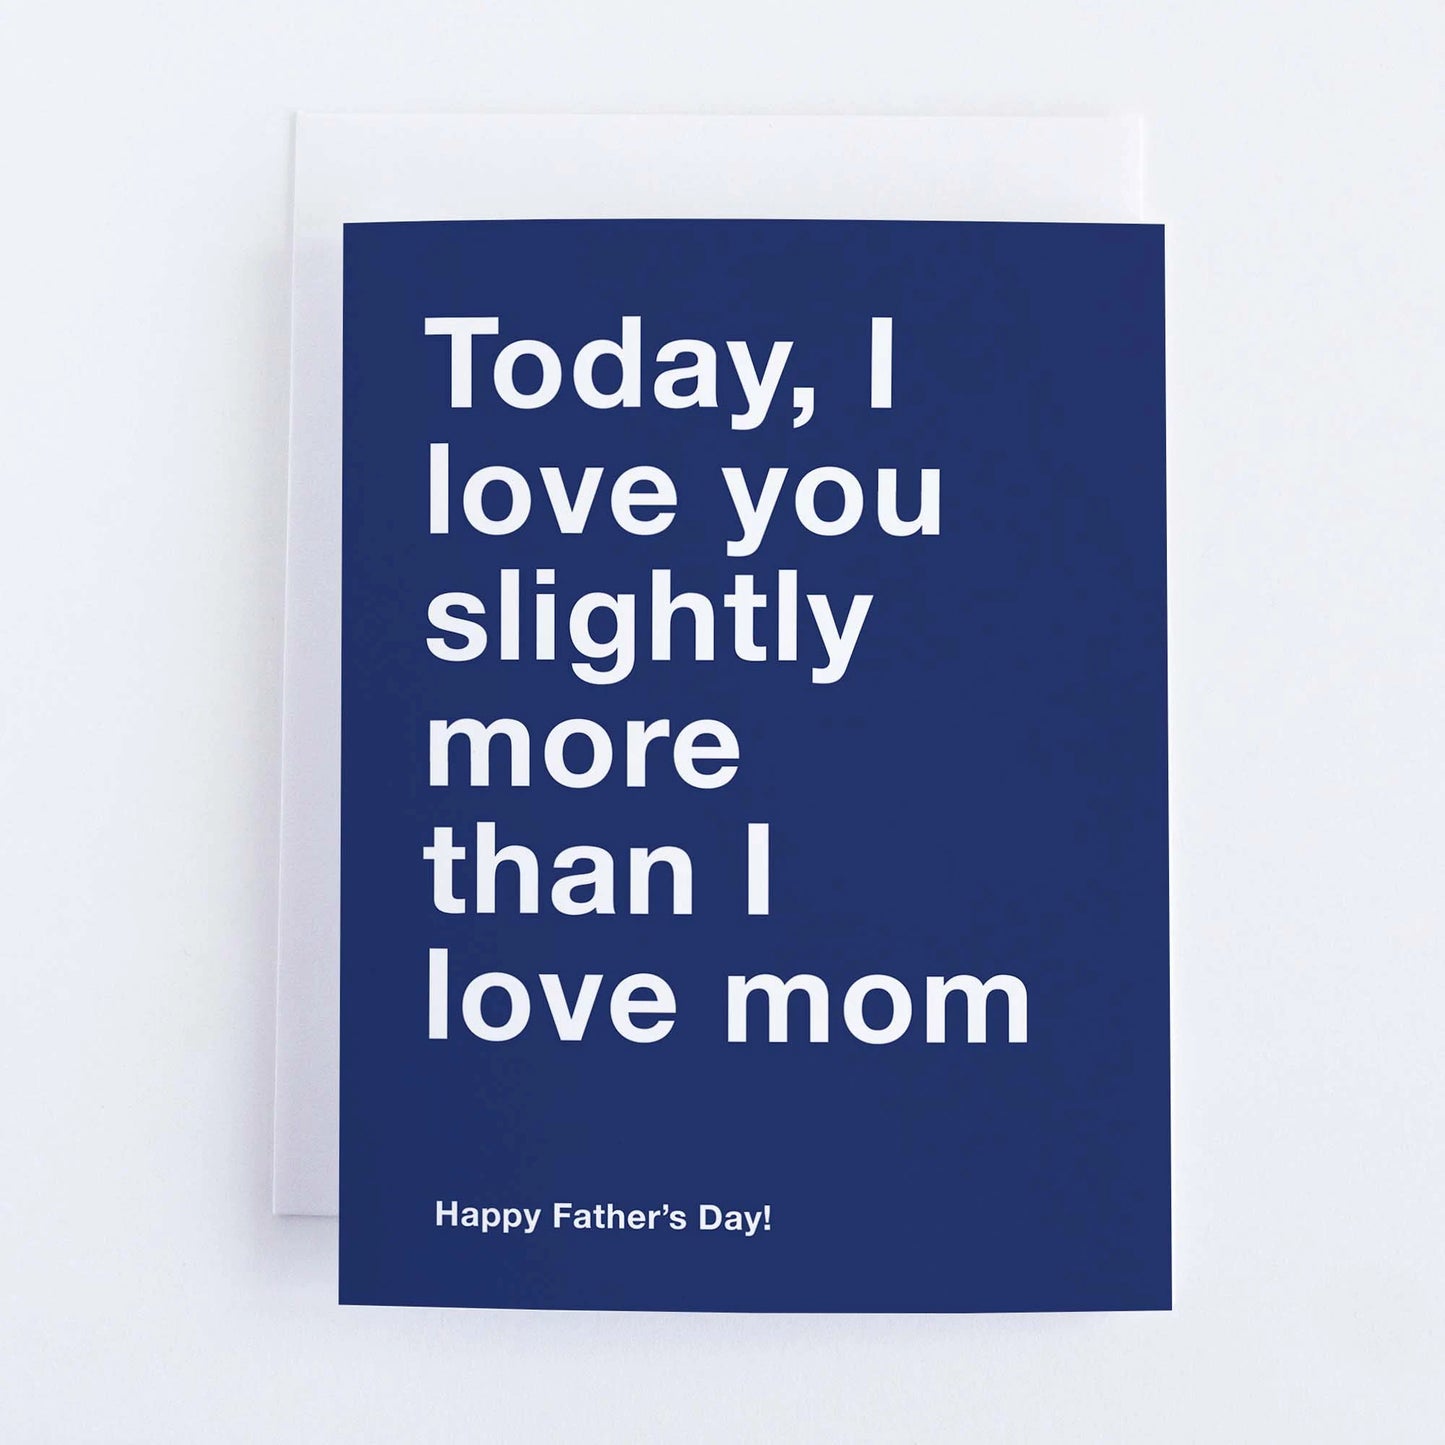 I Love You More Than Mom!